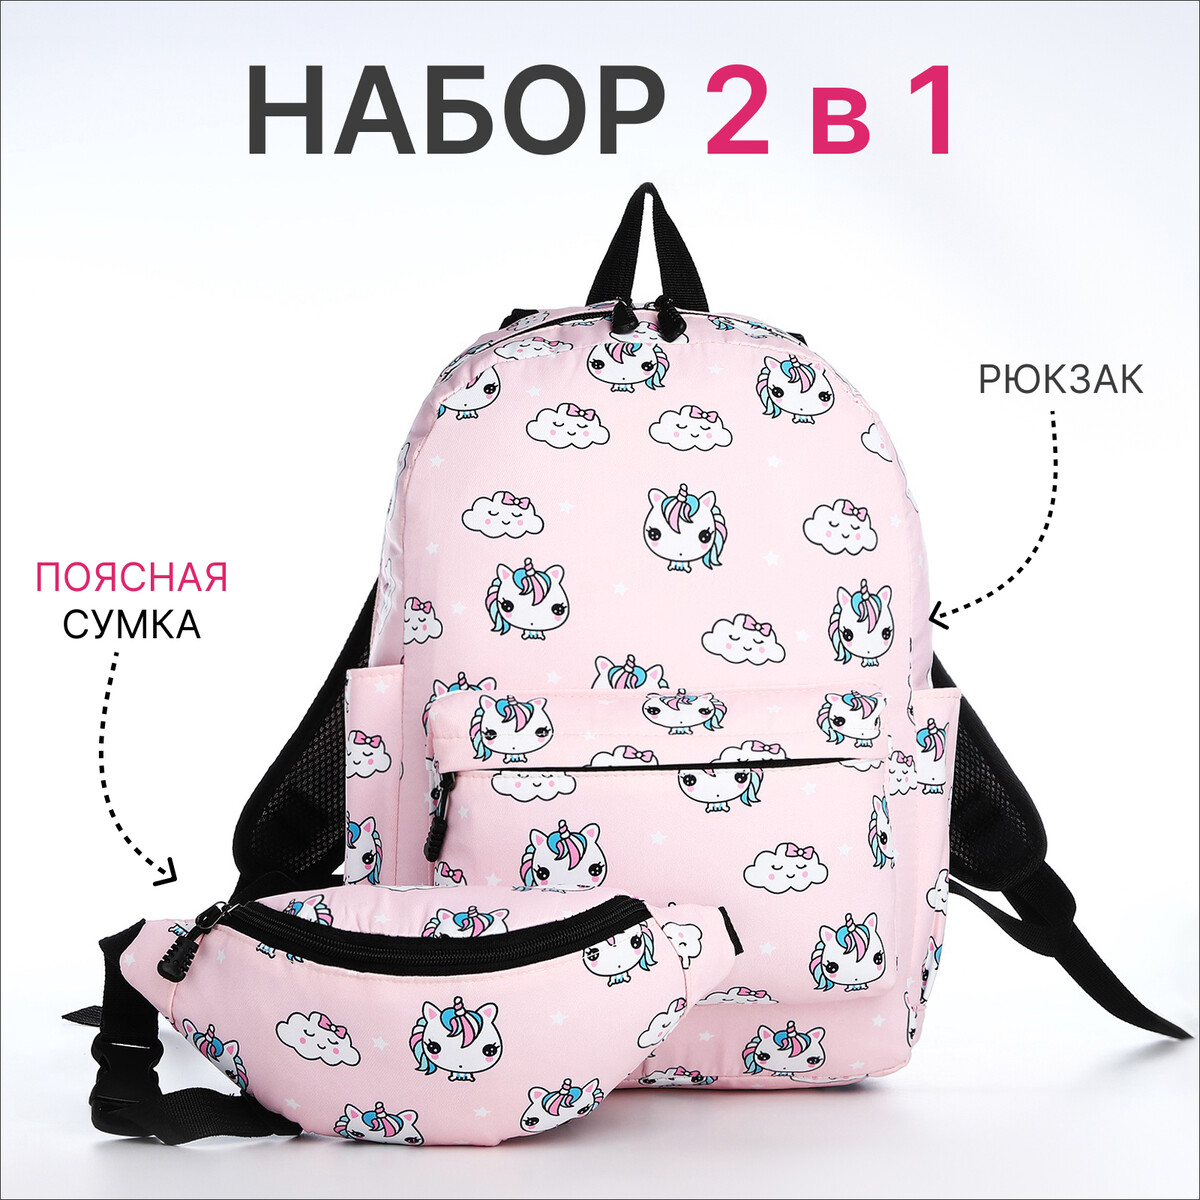 Рюкзак молодежный из текстиля на молнии, 3 кармана, поясная сумка, цвет розовый поясная сумка на молнии розовый